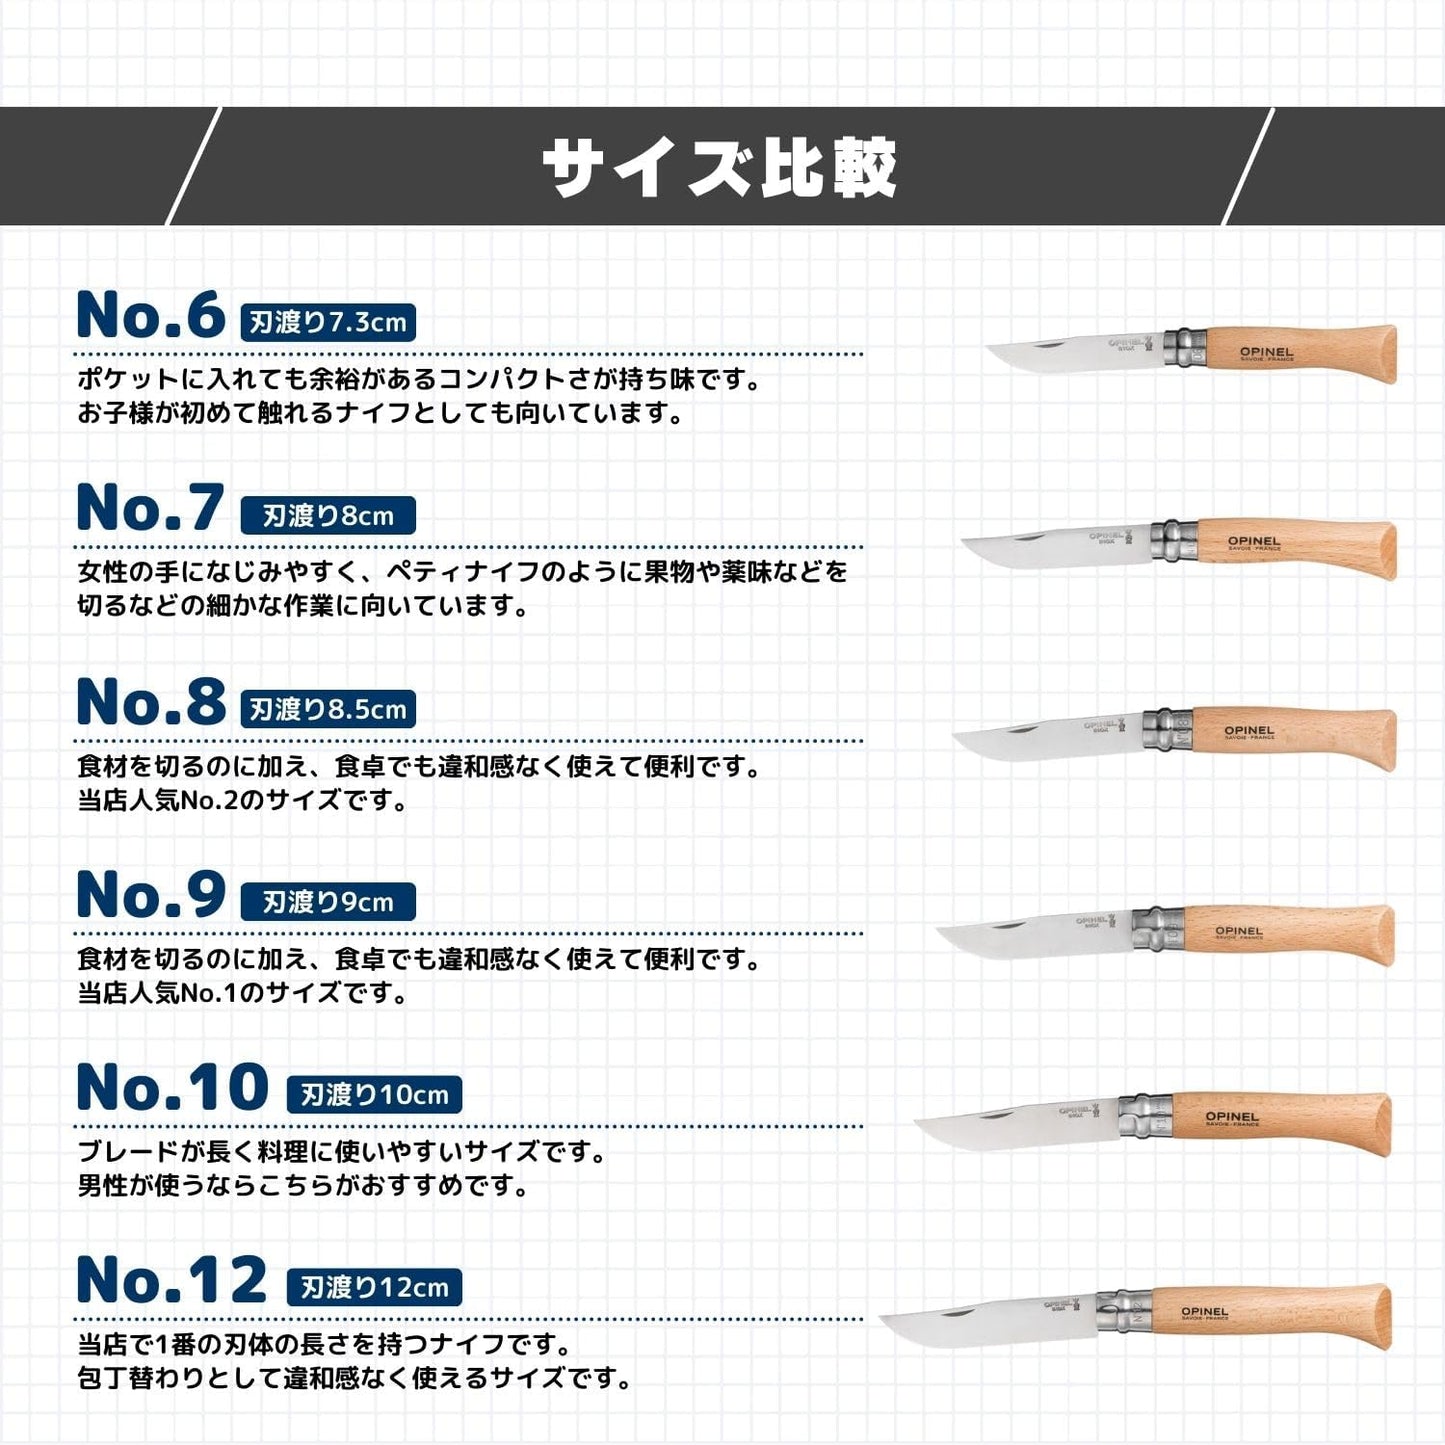 【名入れ可能】 OPINEL オピネルナイフ No.6 ～ No.12 名入れ 選べる ステンレス スチールナイフ